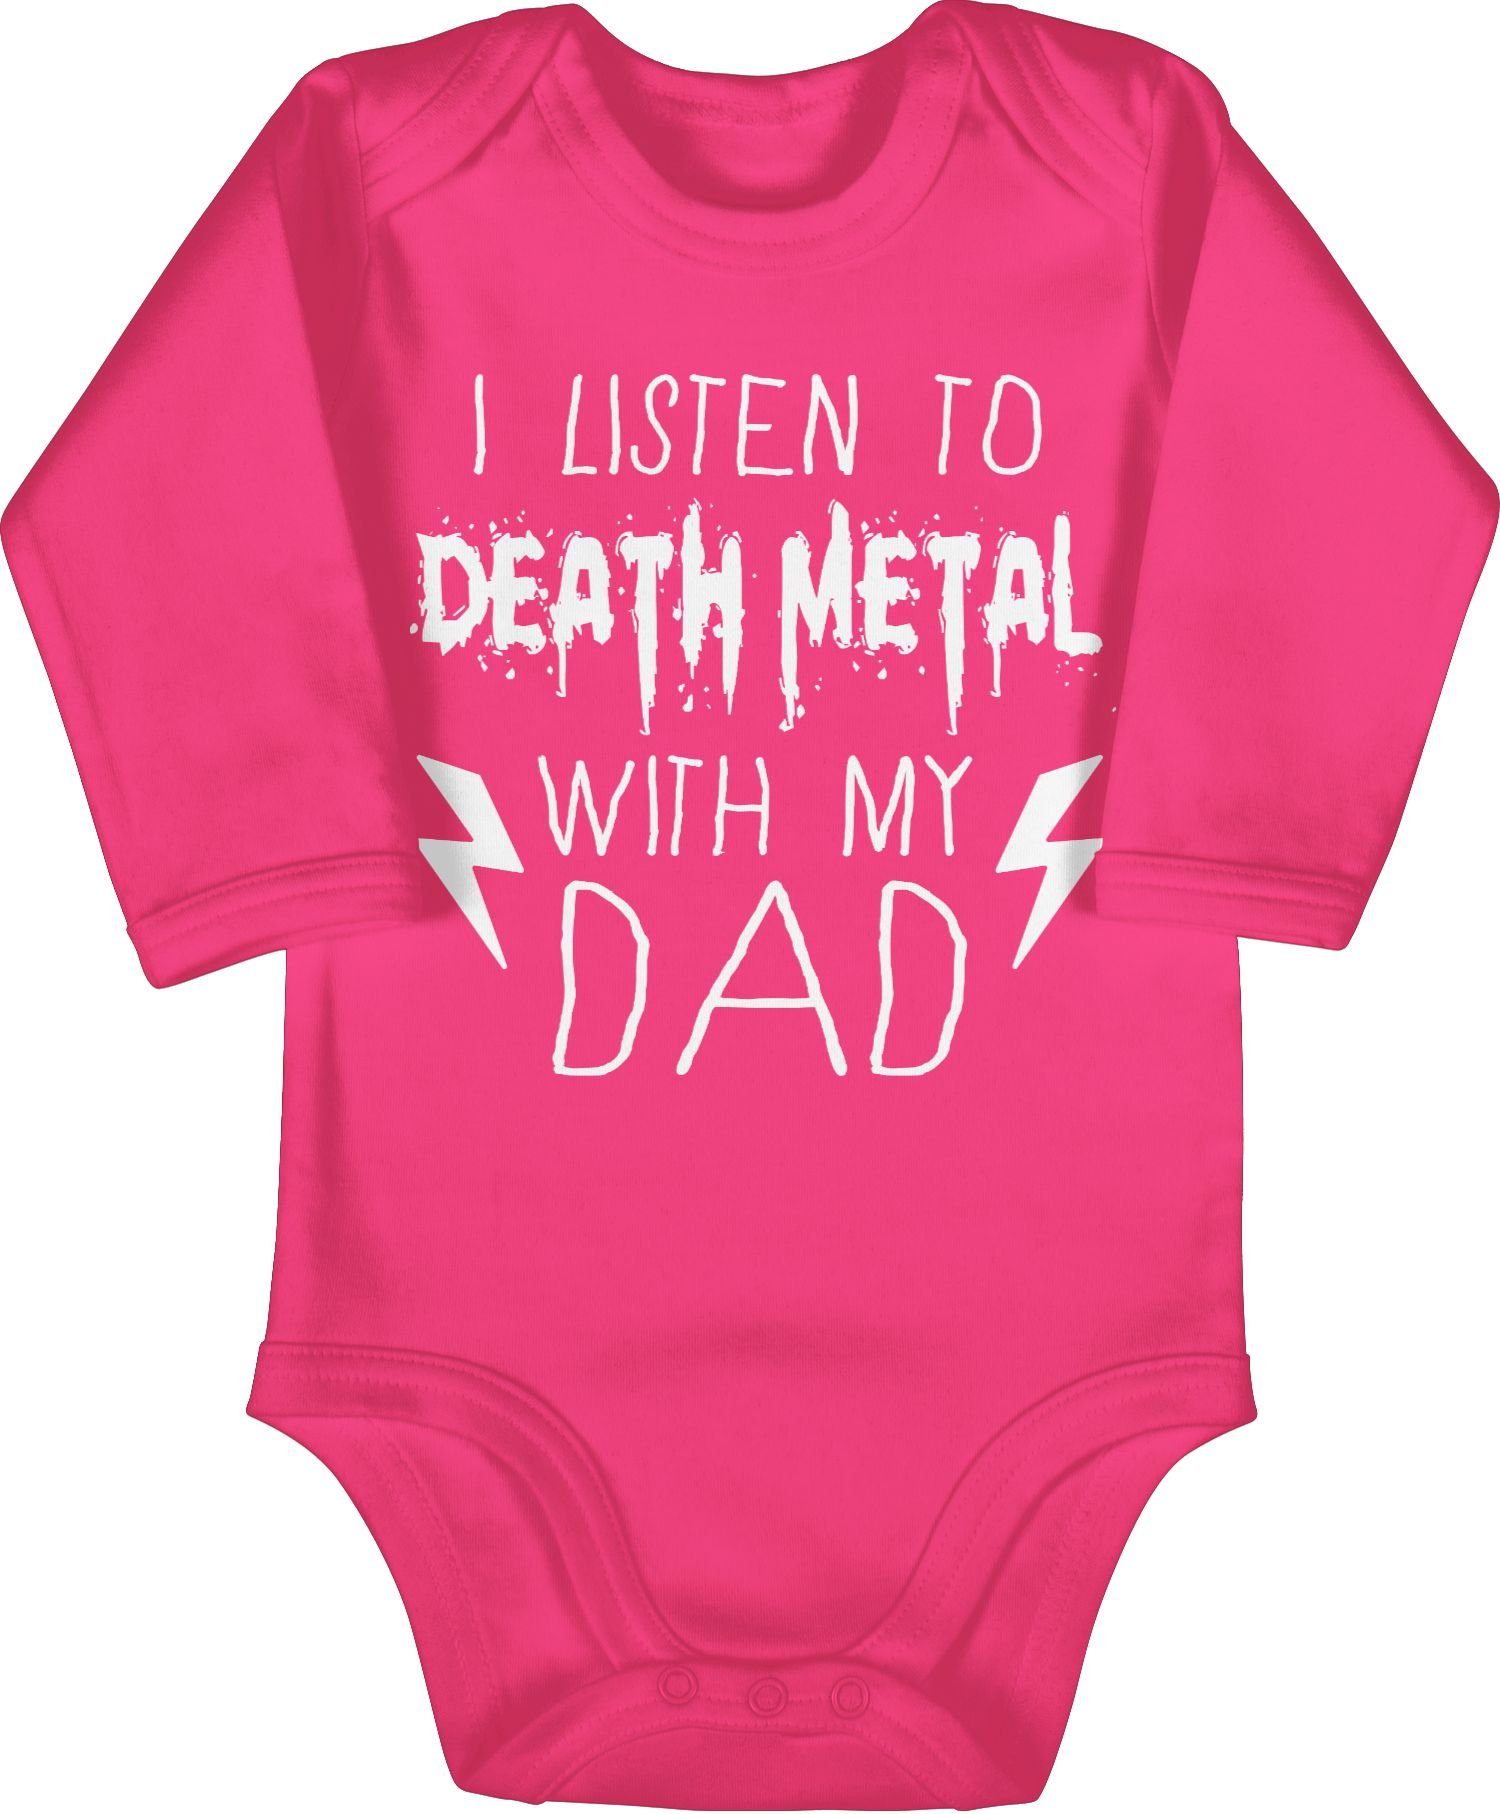 Fuchsia Death my with dad Baby 2 listen to Sprüche I Shirtracer Shirtbody weiß Metal